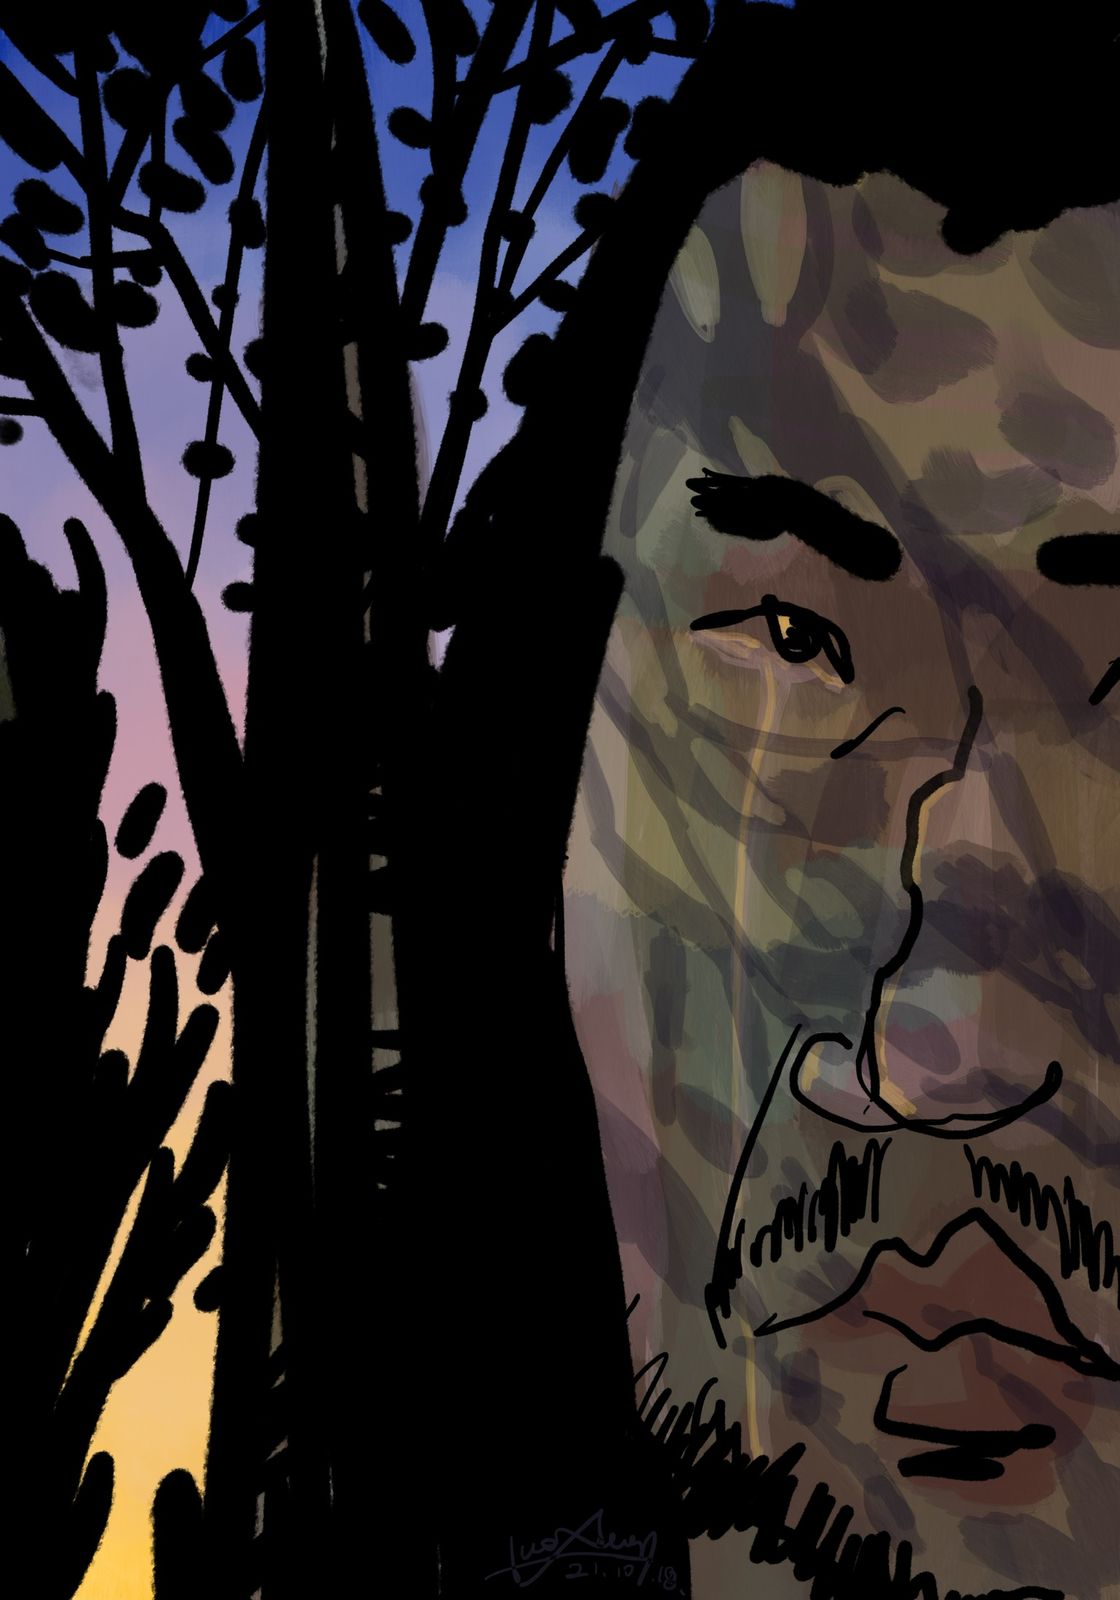 绘本《胡子大叔的旅行》一 一树影中插画图片壁纸